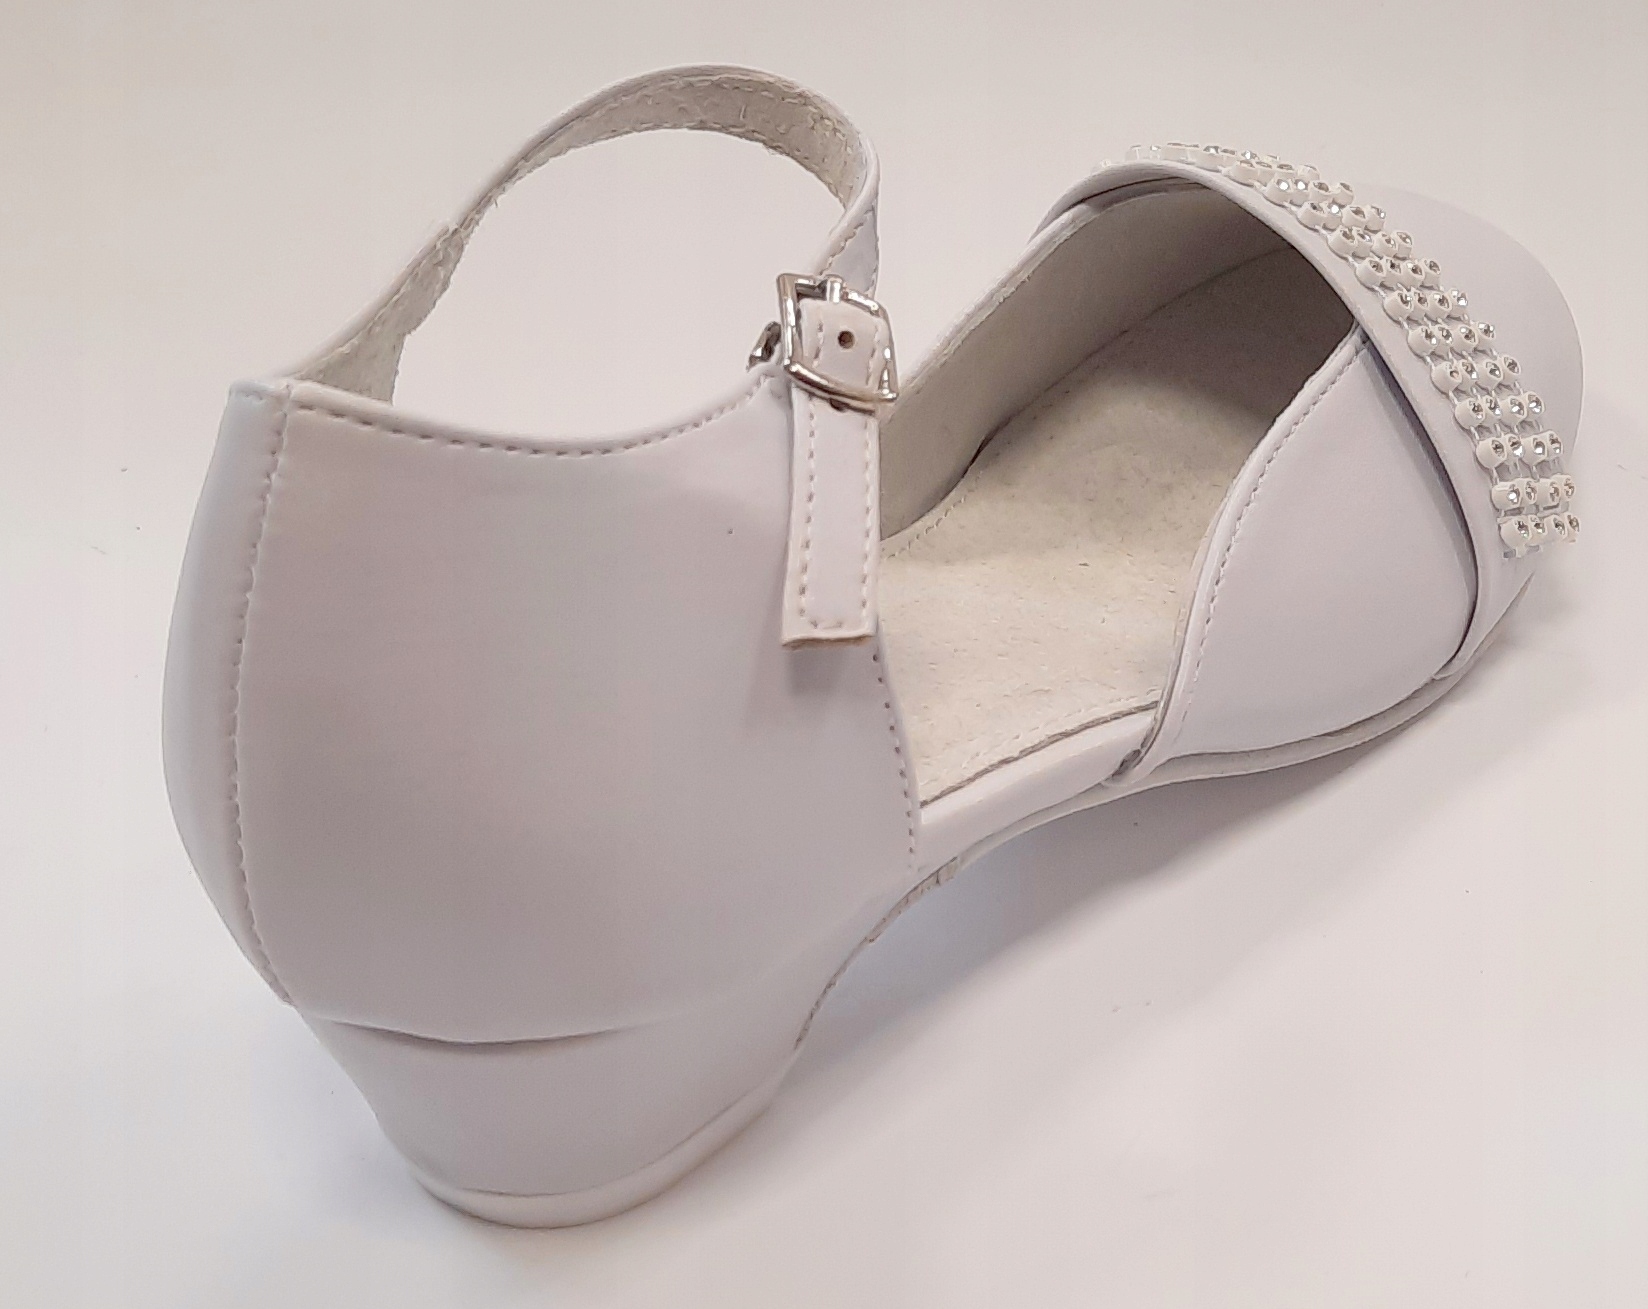 Туфли-балерины для причастия белые, размеры 37 см, 23,80 см